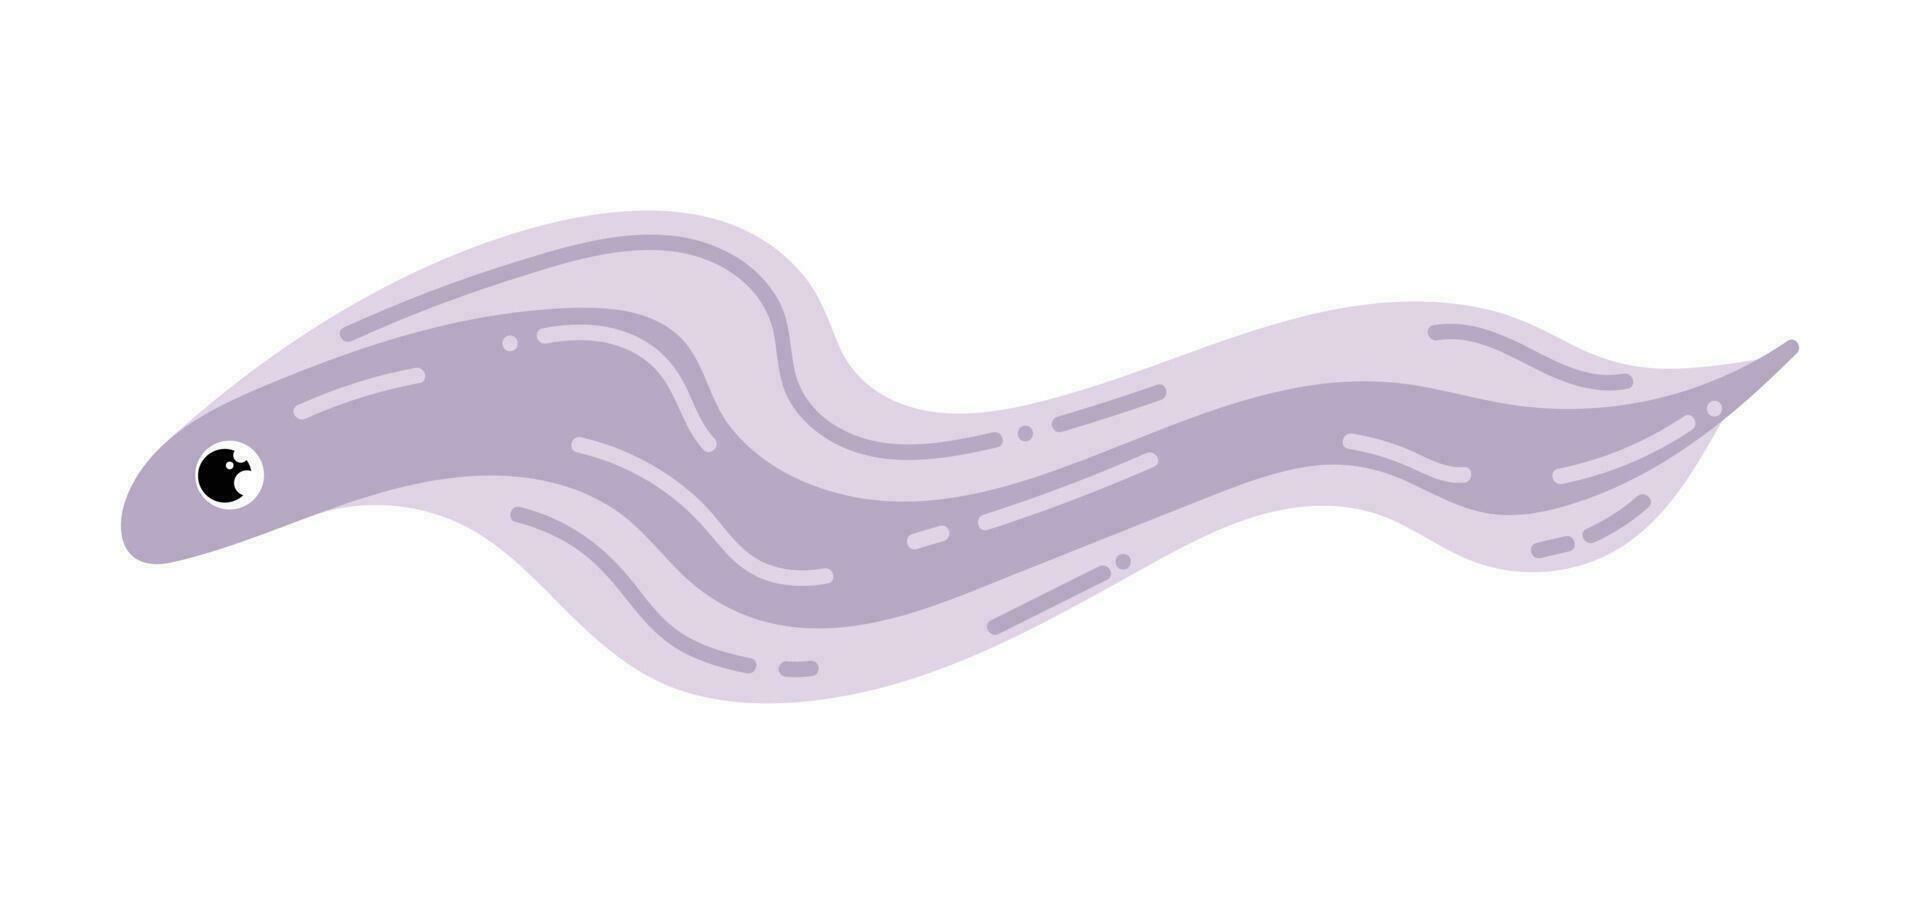 ål fisk. vektor illustration isolerat på vit